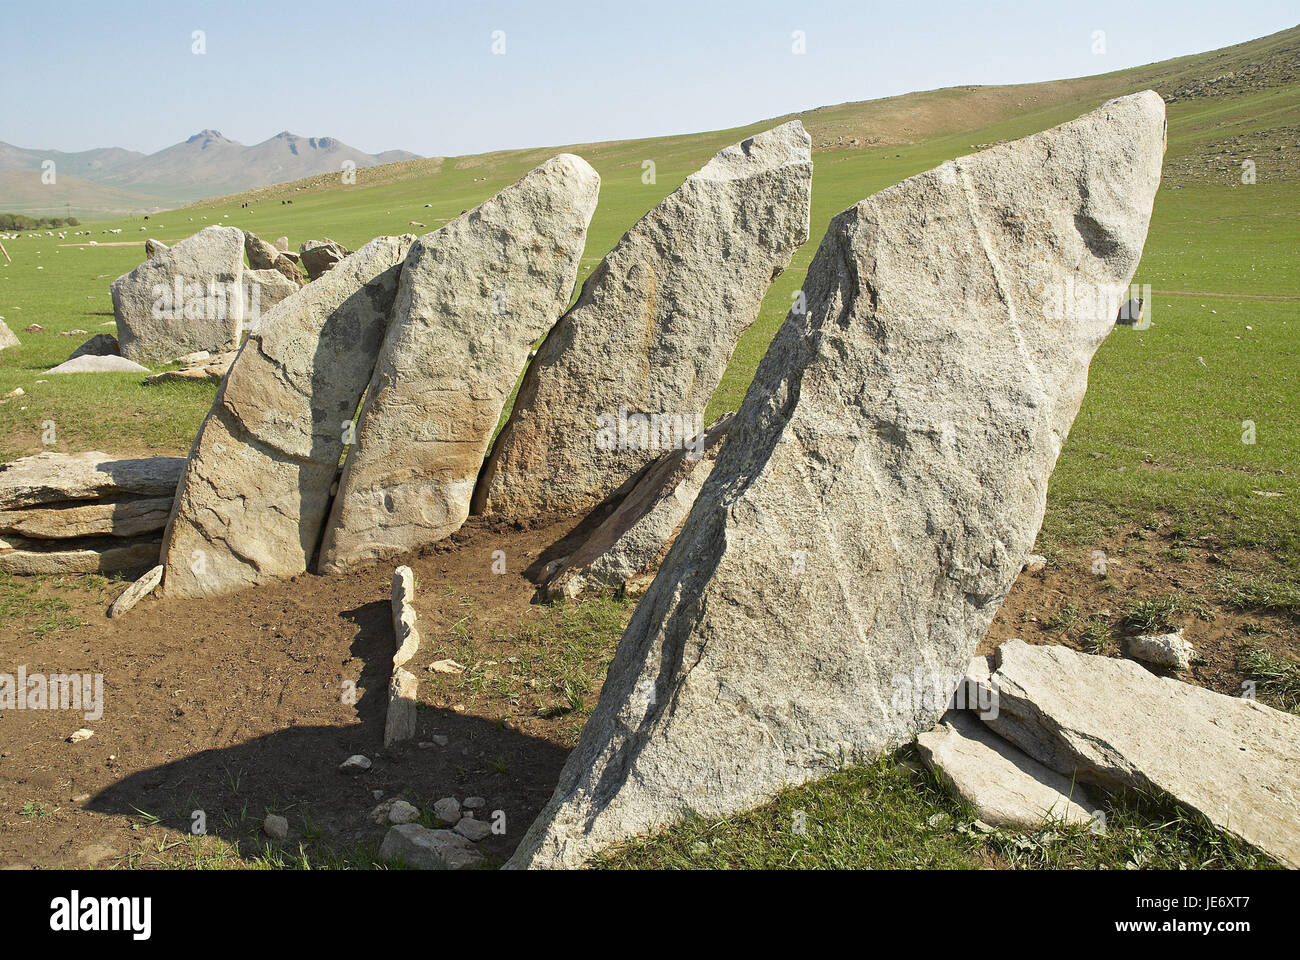 La Mongolie, l'Asie centrale, province historique Övörkhangaï, vallée de l'Orkhon, UNESCO world heritage, stèles de pierre, Banque D'Images